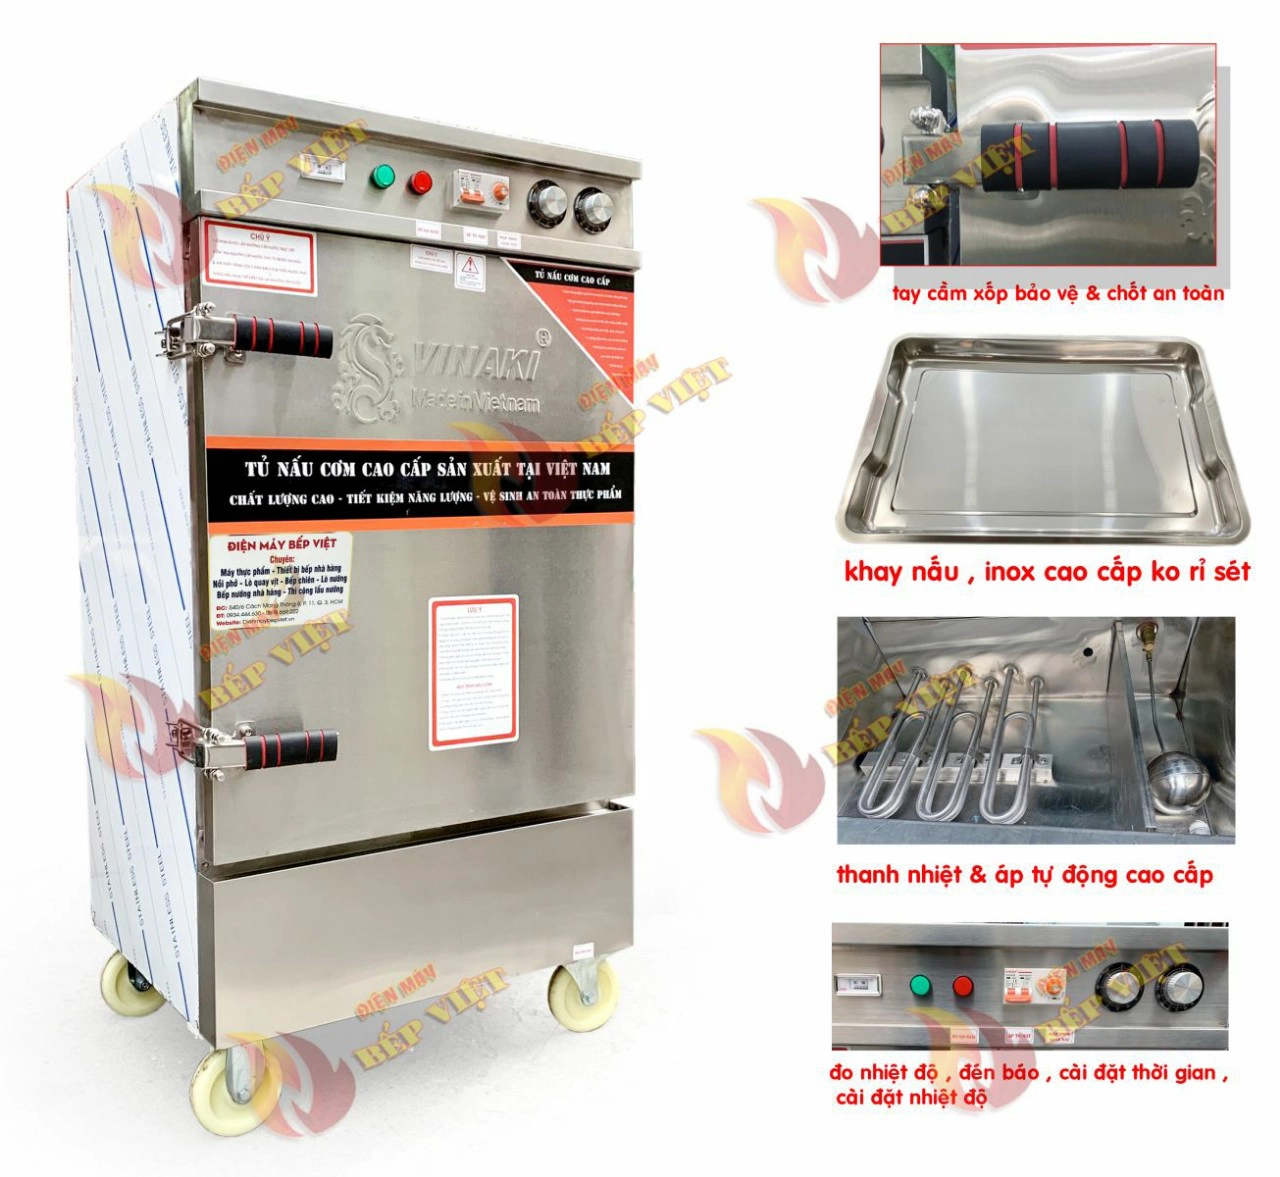 Giới thiệu chi tiết tủ nấu cơm điện